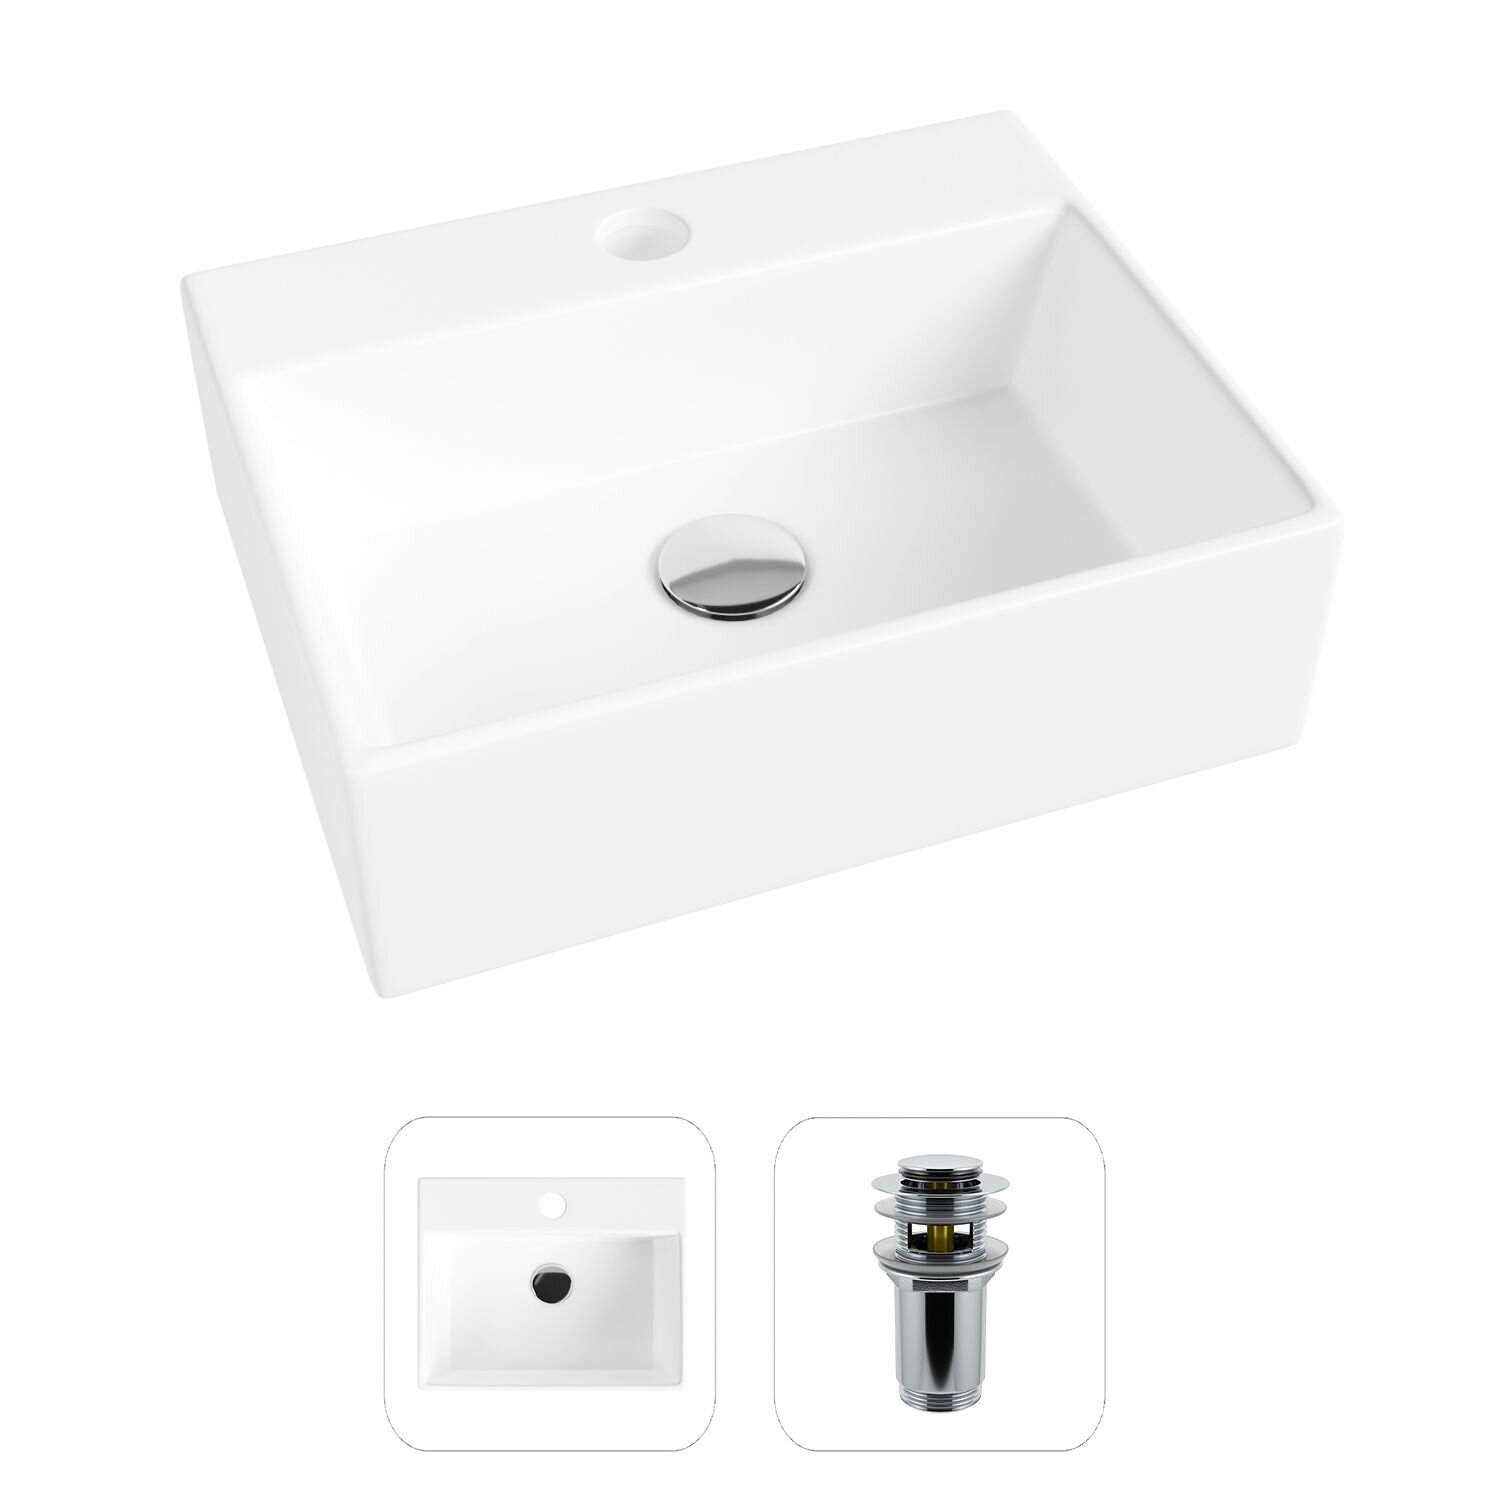 Накладная раковина в ванную Helmken 34439000 комплект 2 в 1: умывальник прямоугольный 39 см, донный клапан click-clack в цвете хром